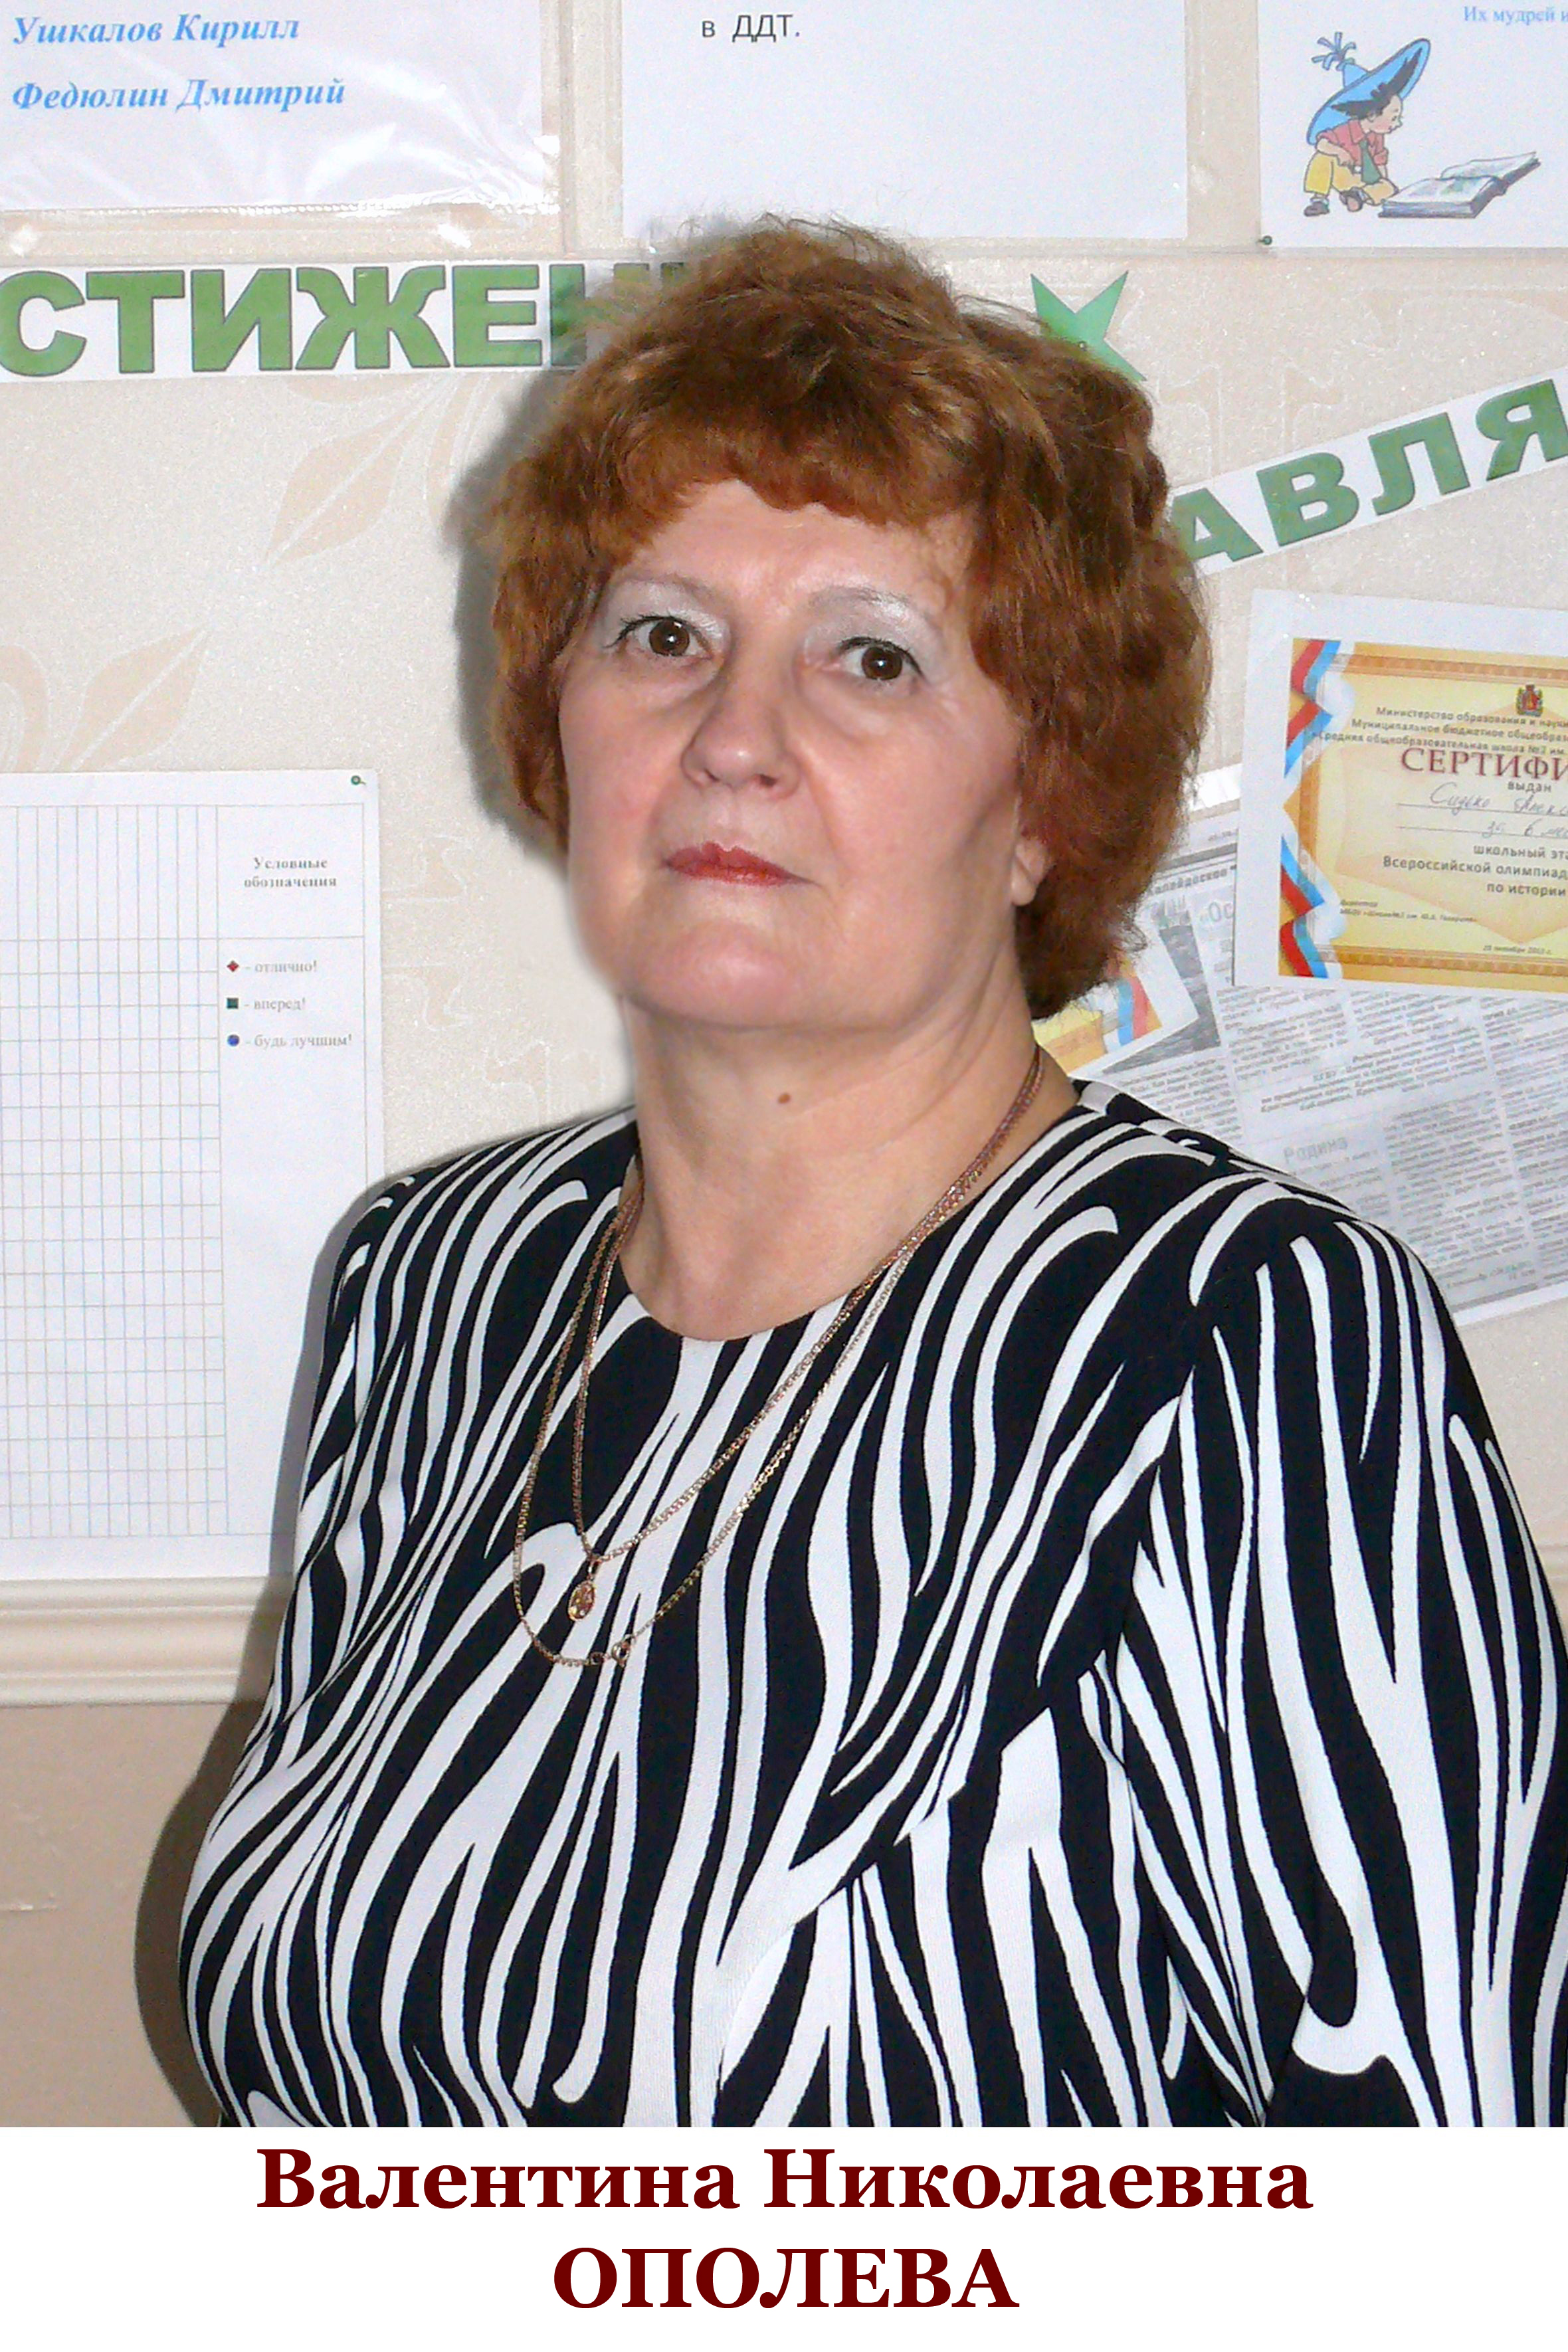 Ополева Валентина Николаевна.